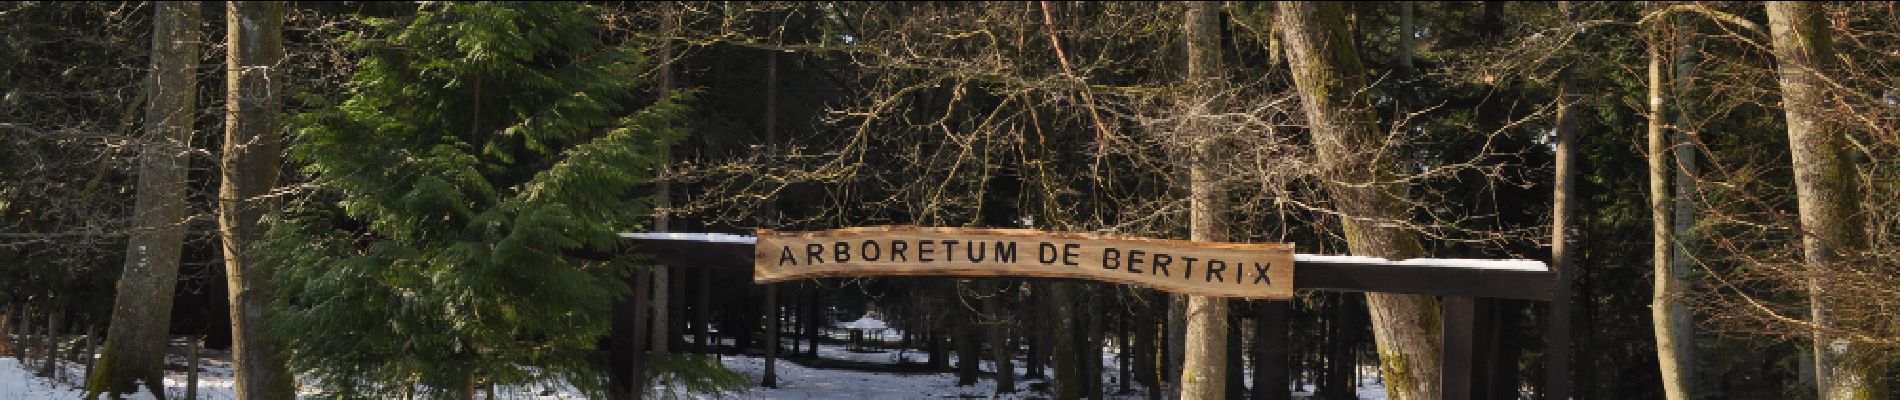 Punto de interés Bertrix - Arboretum de Bertrix - Photo